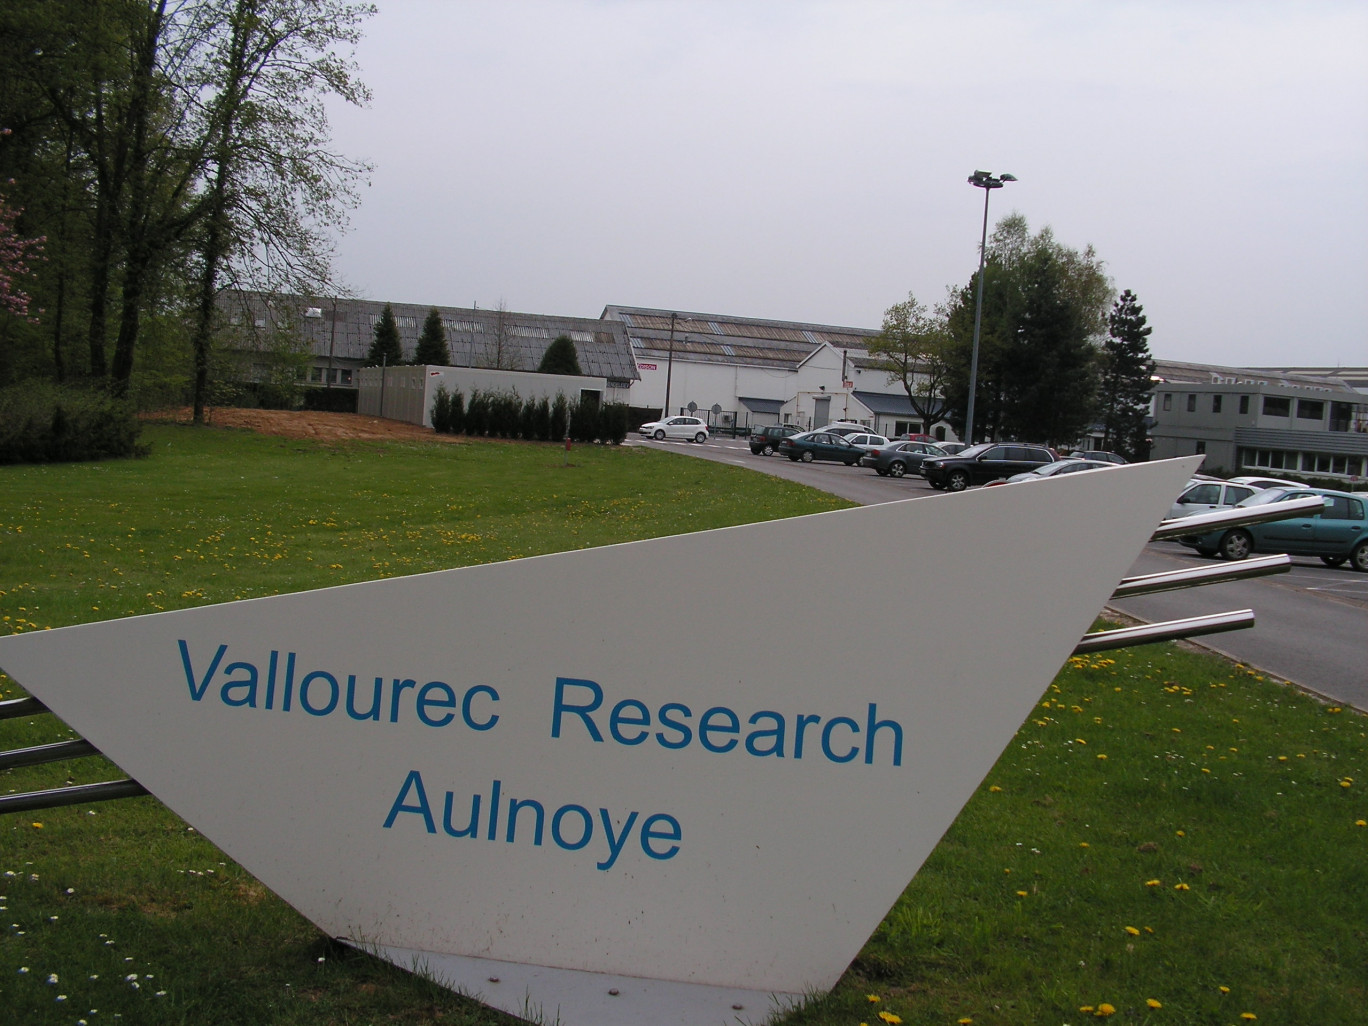 Le centre de recherches d’Aulnoye emploie actuellement 160 personnes. L’extension devrait être terminée fin 2015, après deux ans de travaux.